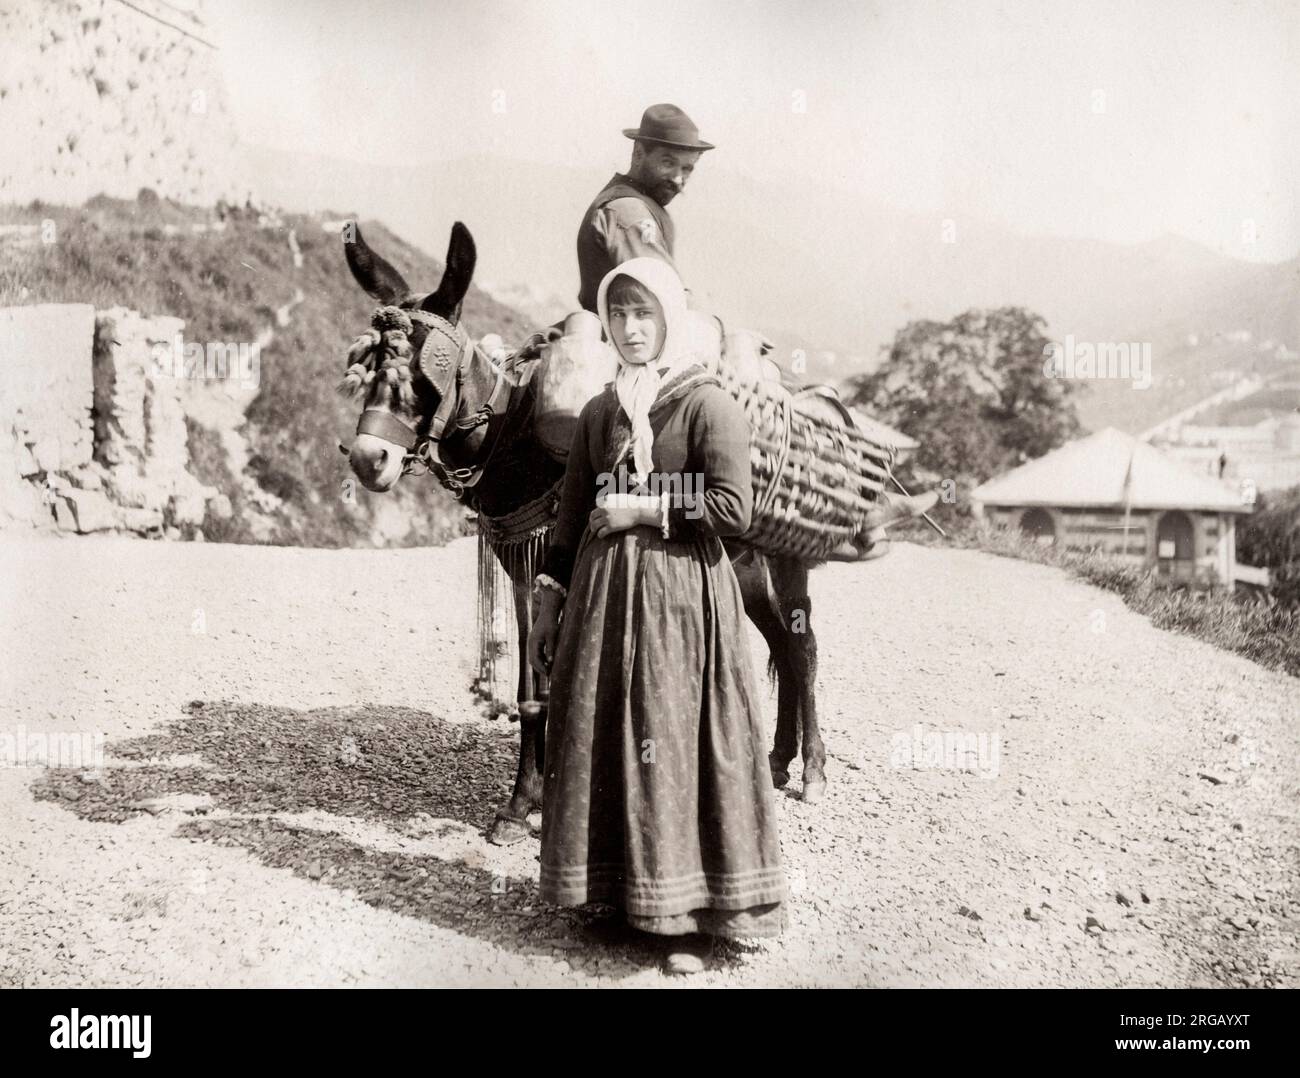 Photographie vintage du XIXe siècle - pack de ferme mule, probablement la France ou l'Italie, vers 1890. Banque D'Images